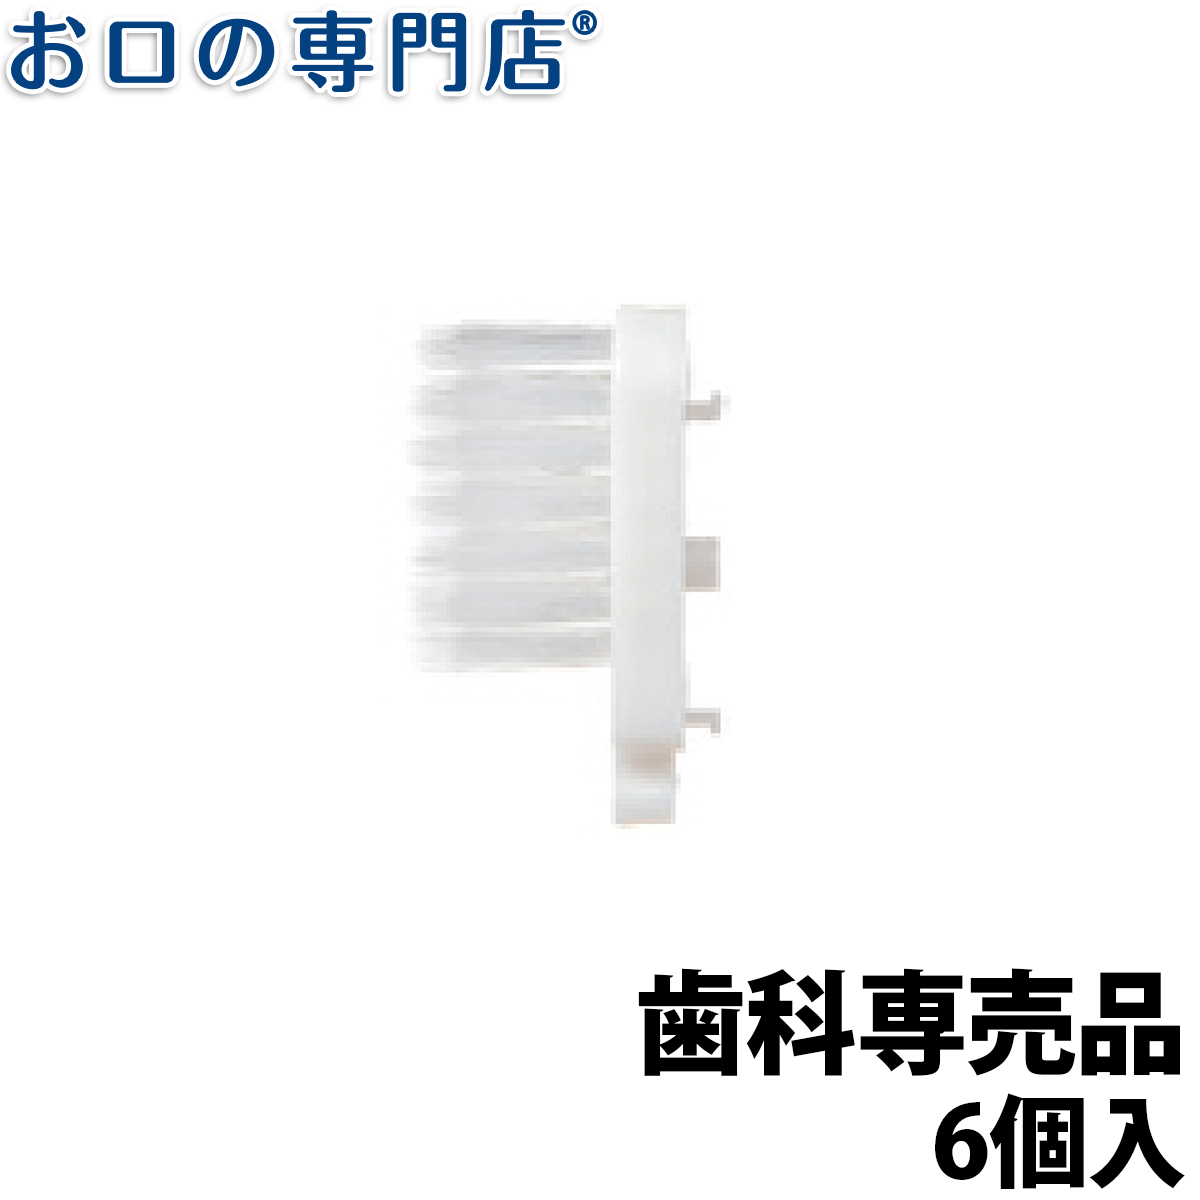 日本 ヘッド交換式歯ブラシ SaLeDo 替えブラシ 6個入 ふつう コンパクトヘッド ハブラシ 歯ブラシ 歯科専売品 テムコ